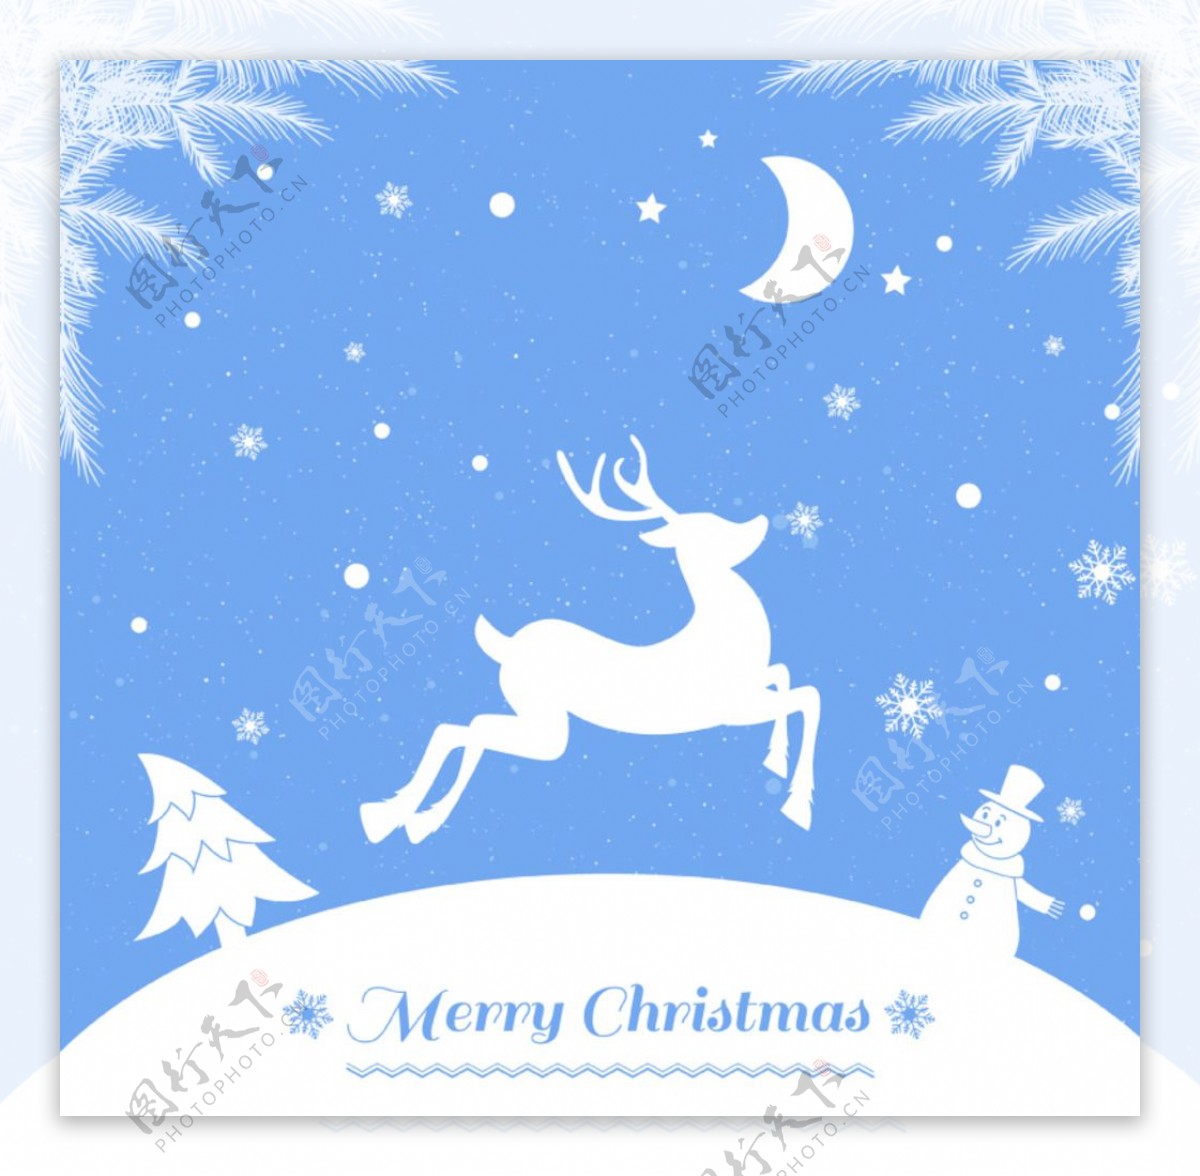 白色驯鹿圣诞背景矢量素材雪花月